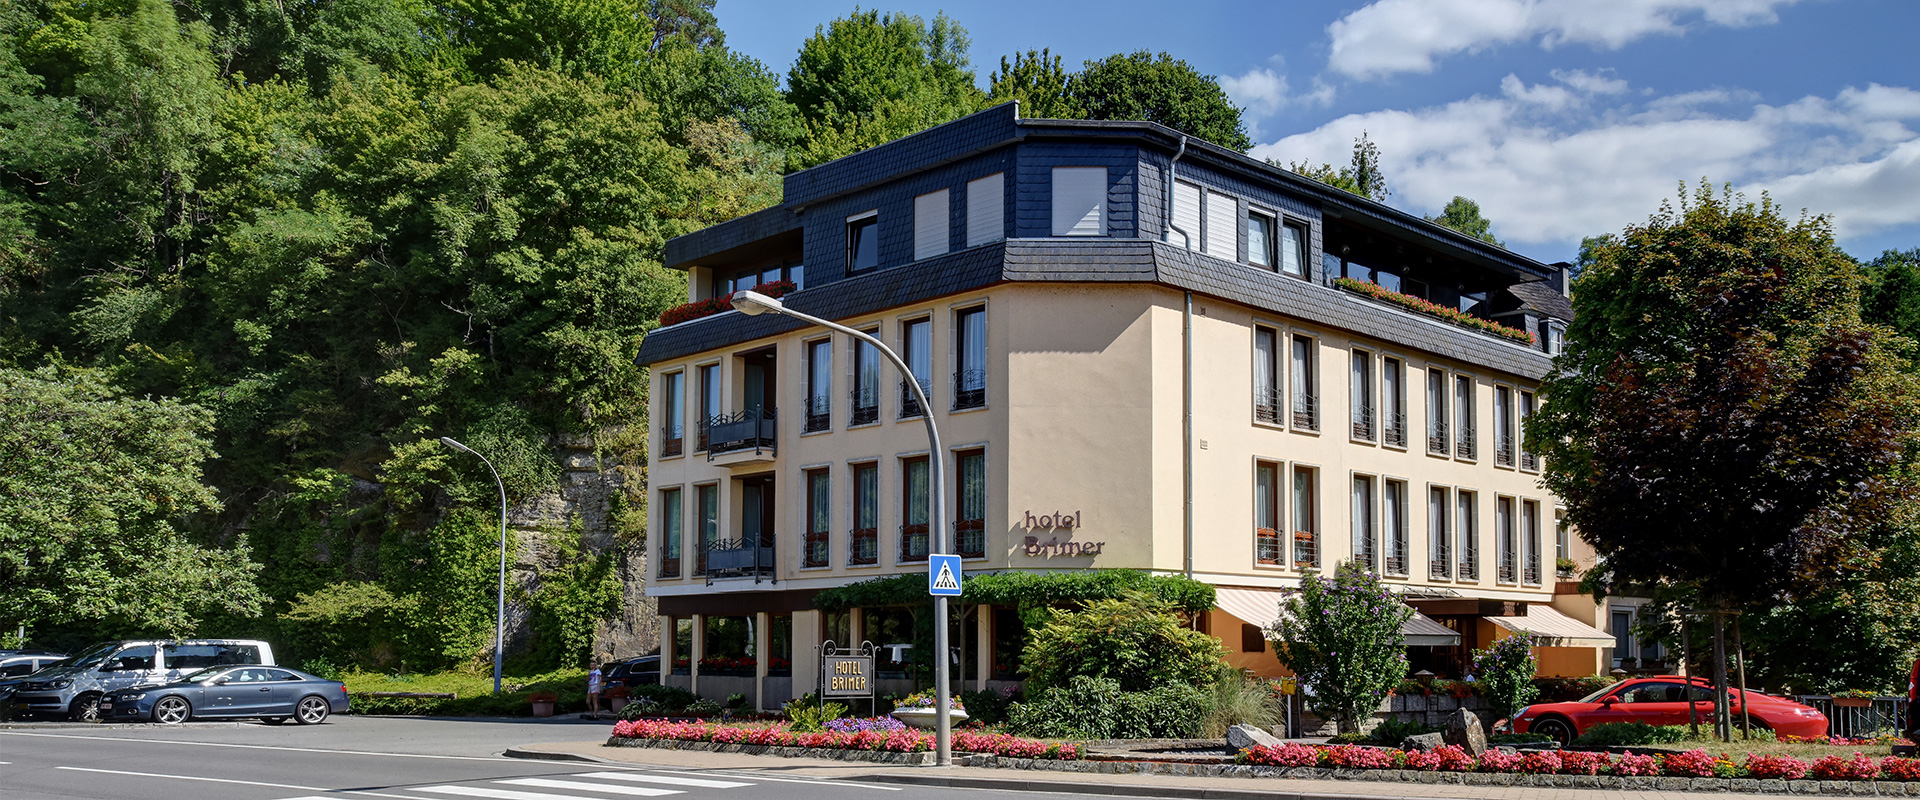 Accueil - Hotel Brimer